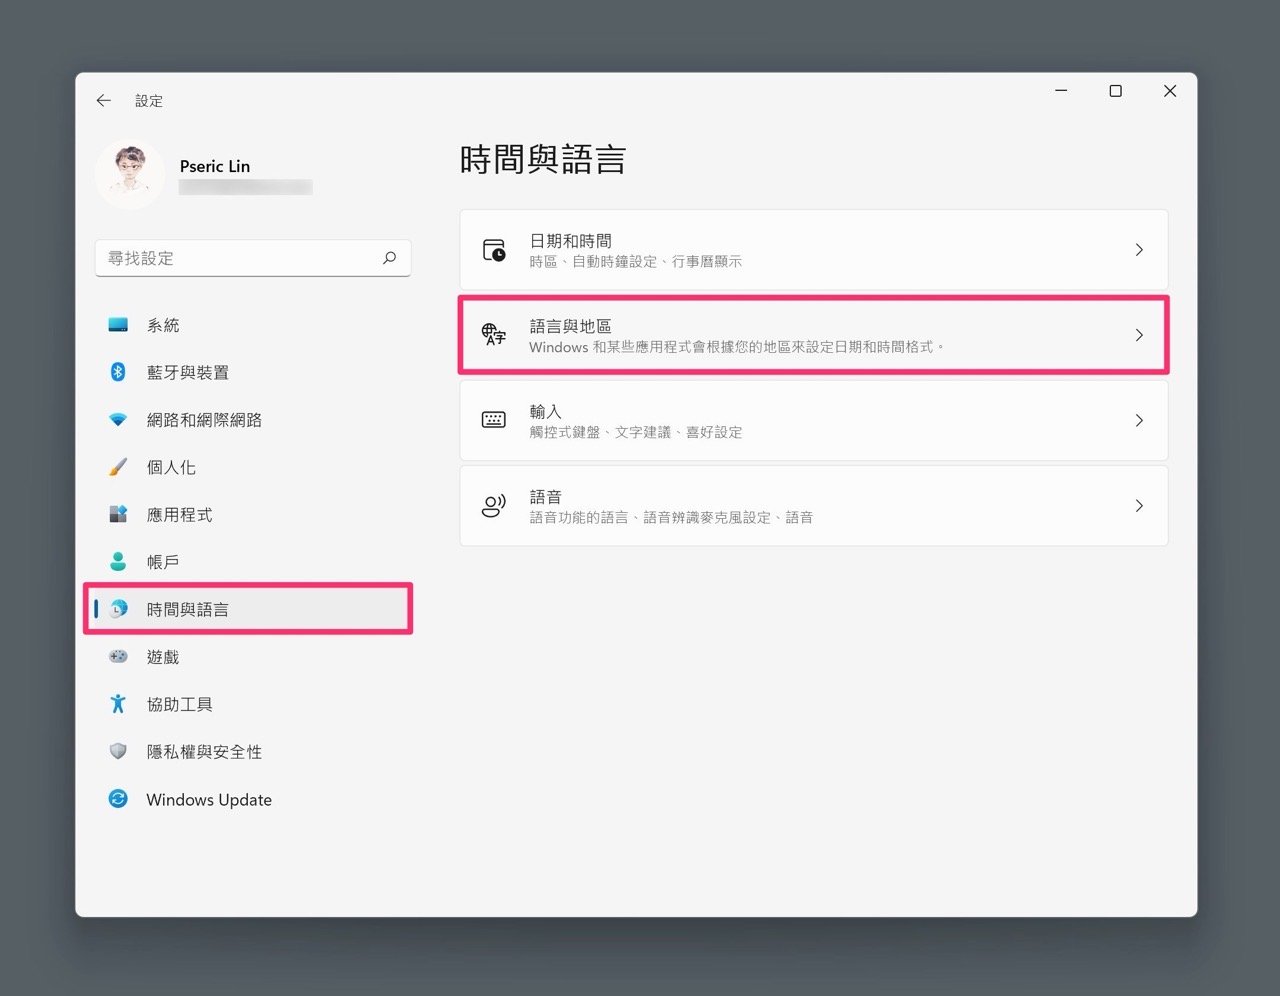 解决Windows 11 安装简体中文或非Unicode 程式出现的乱码问题